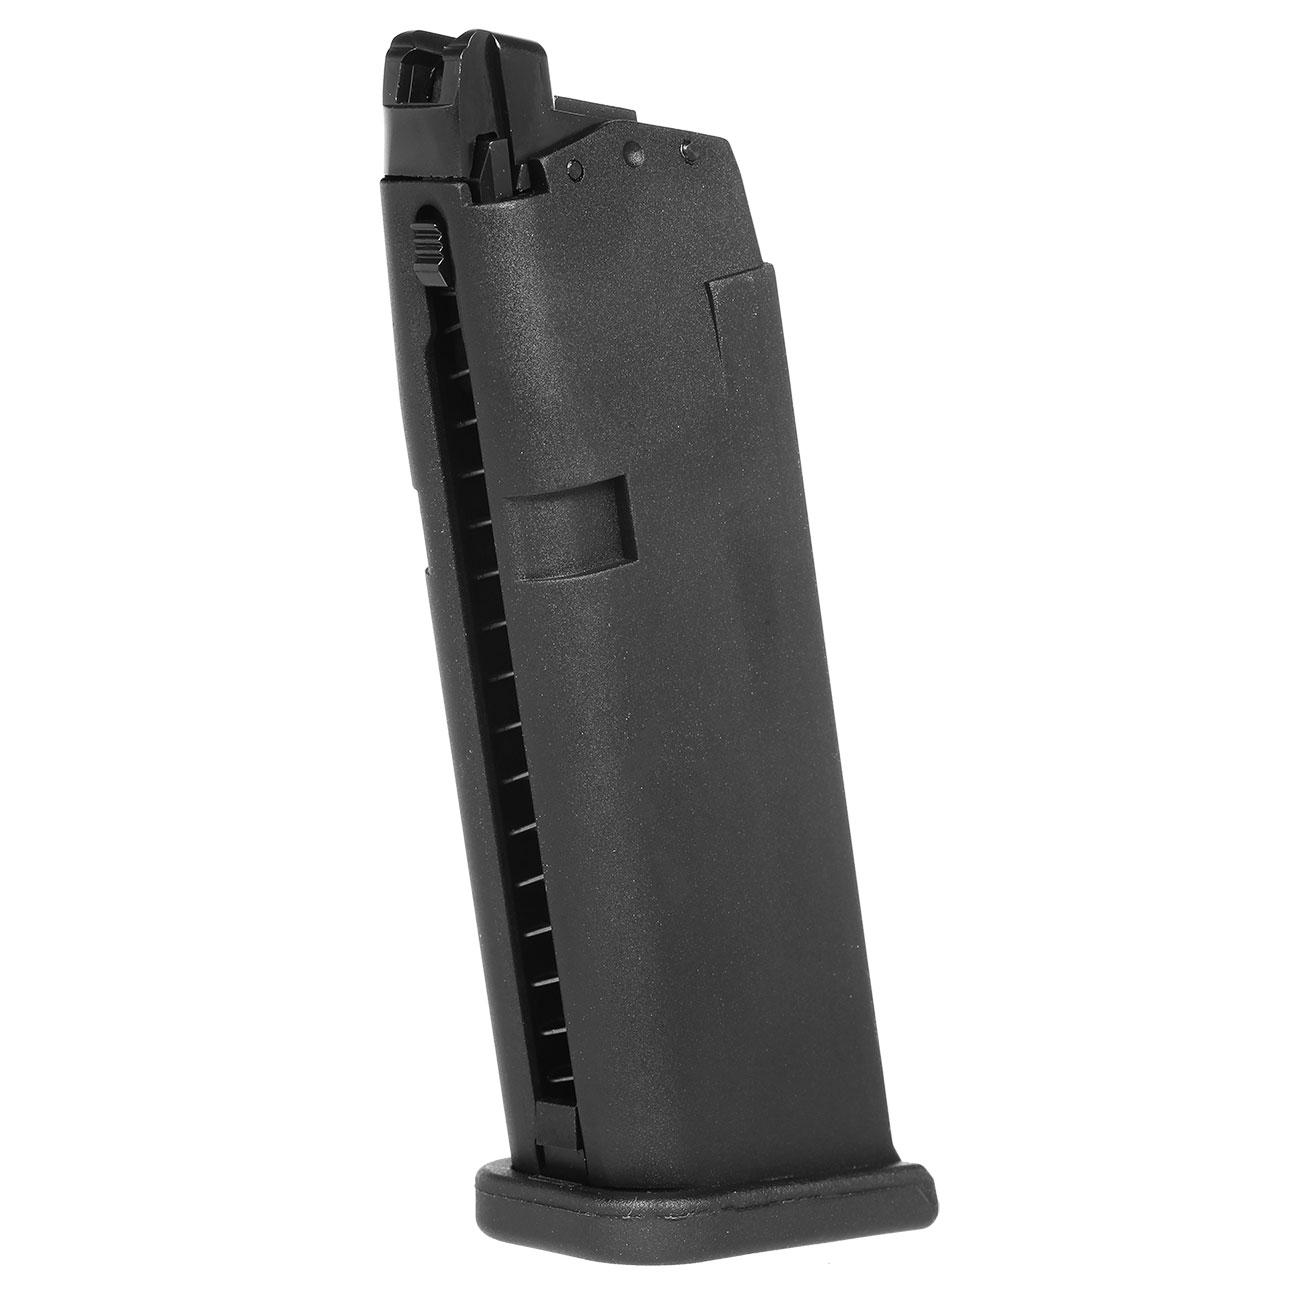 VFC Glock 19 Magazin 23 Schuss Standard-Type schwarz